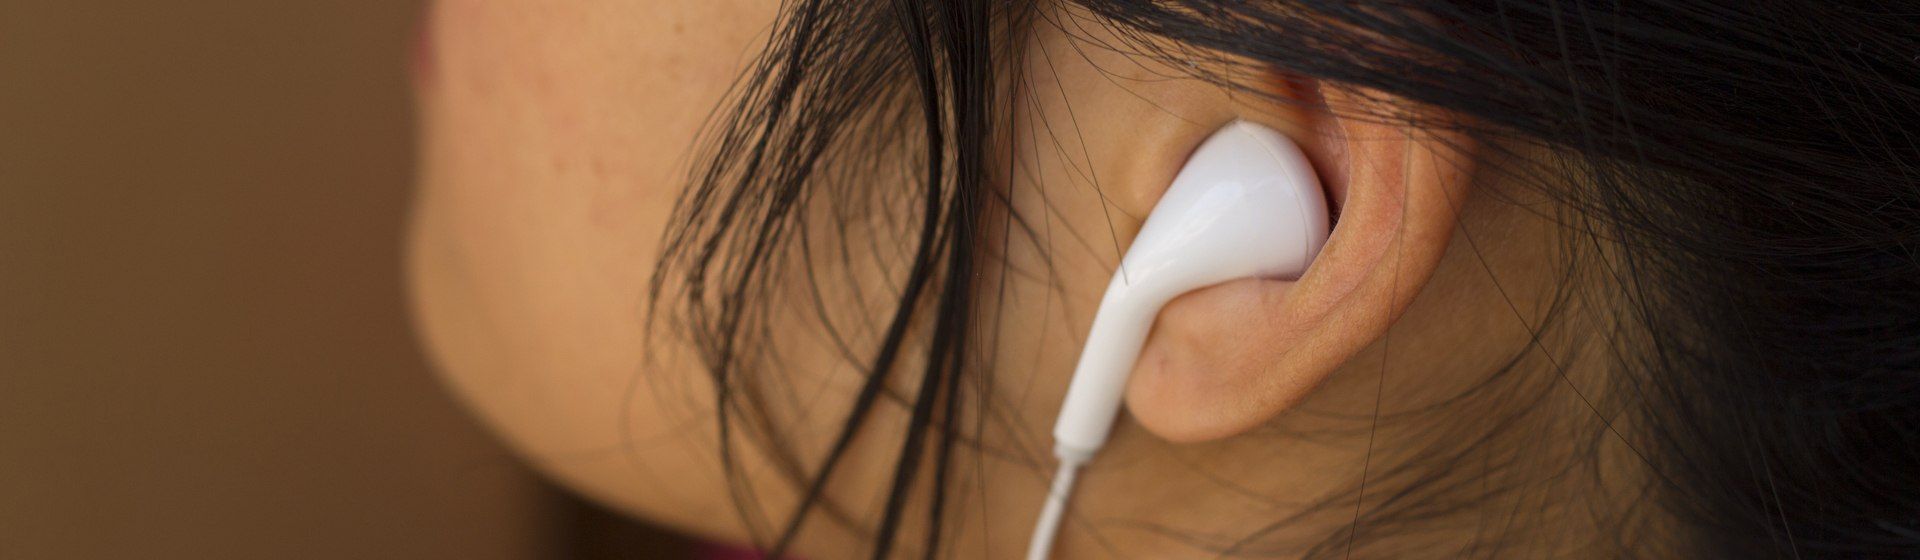 Fone de ouvido barato: as melhores opções para gastar pouco